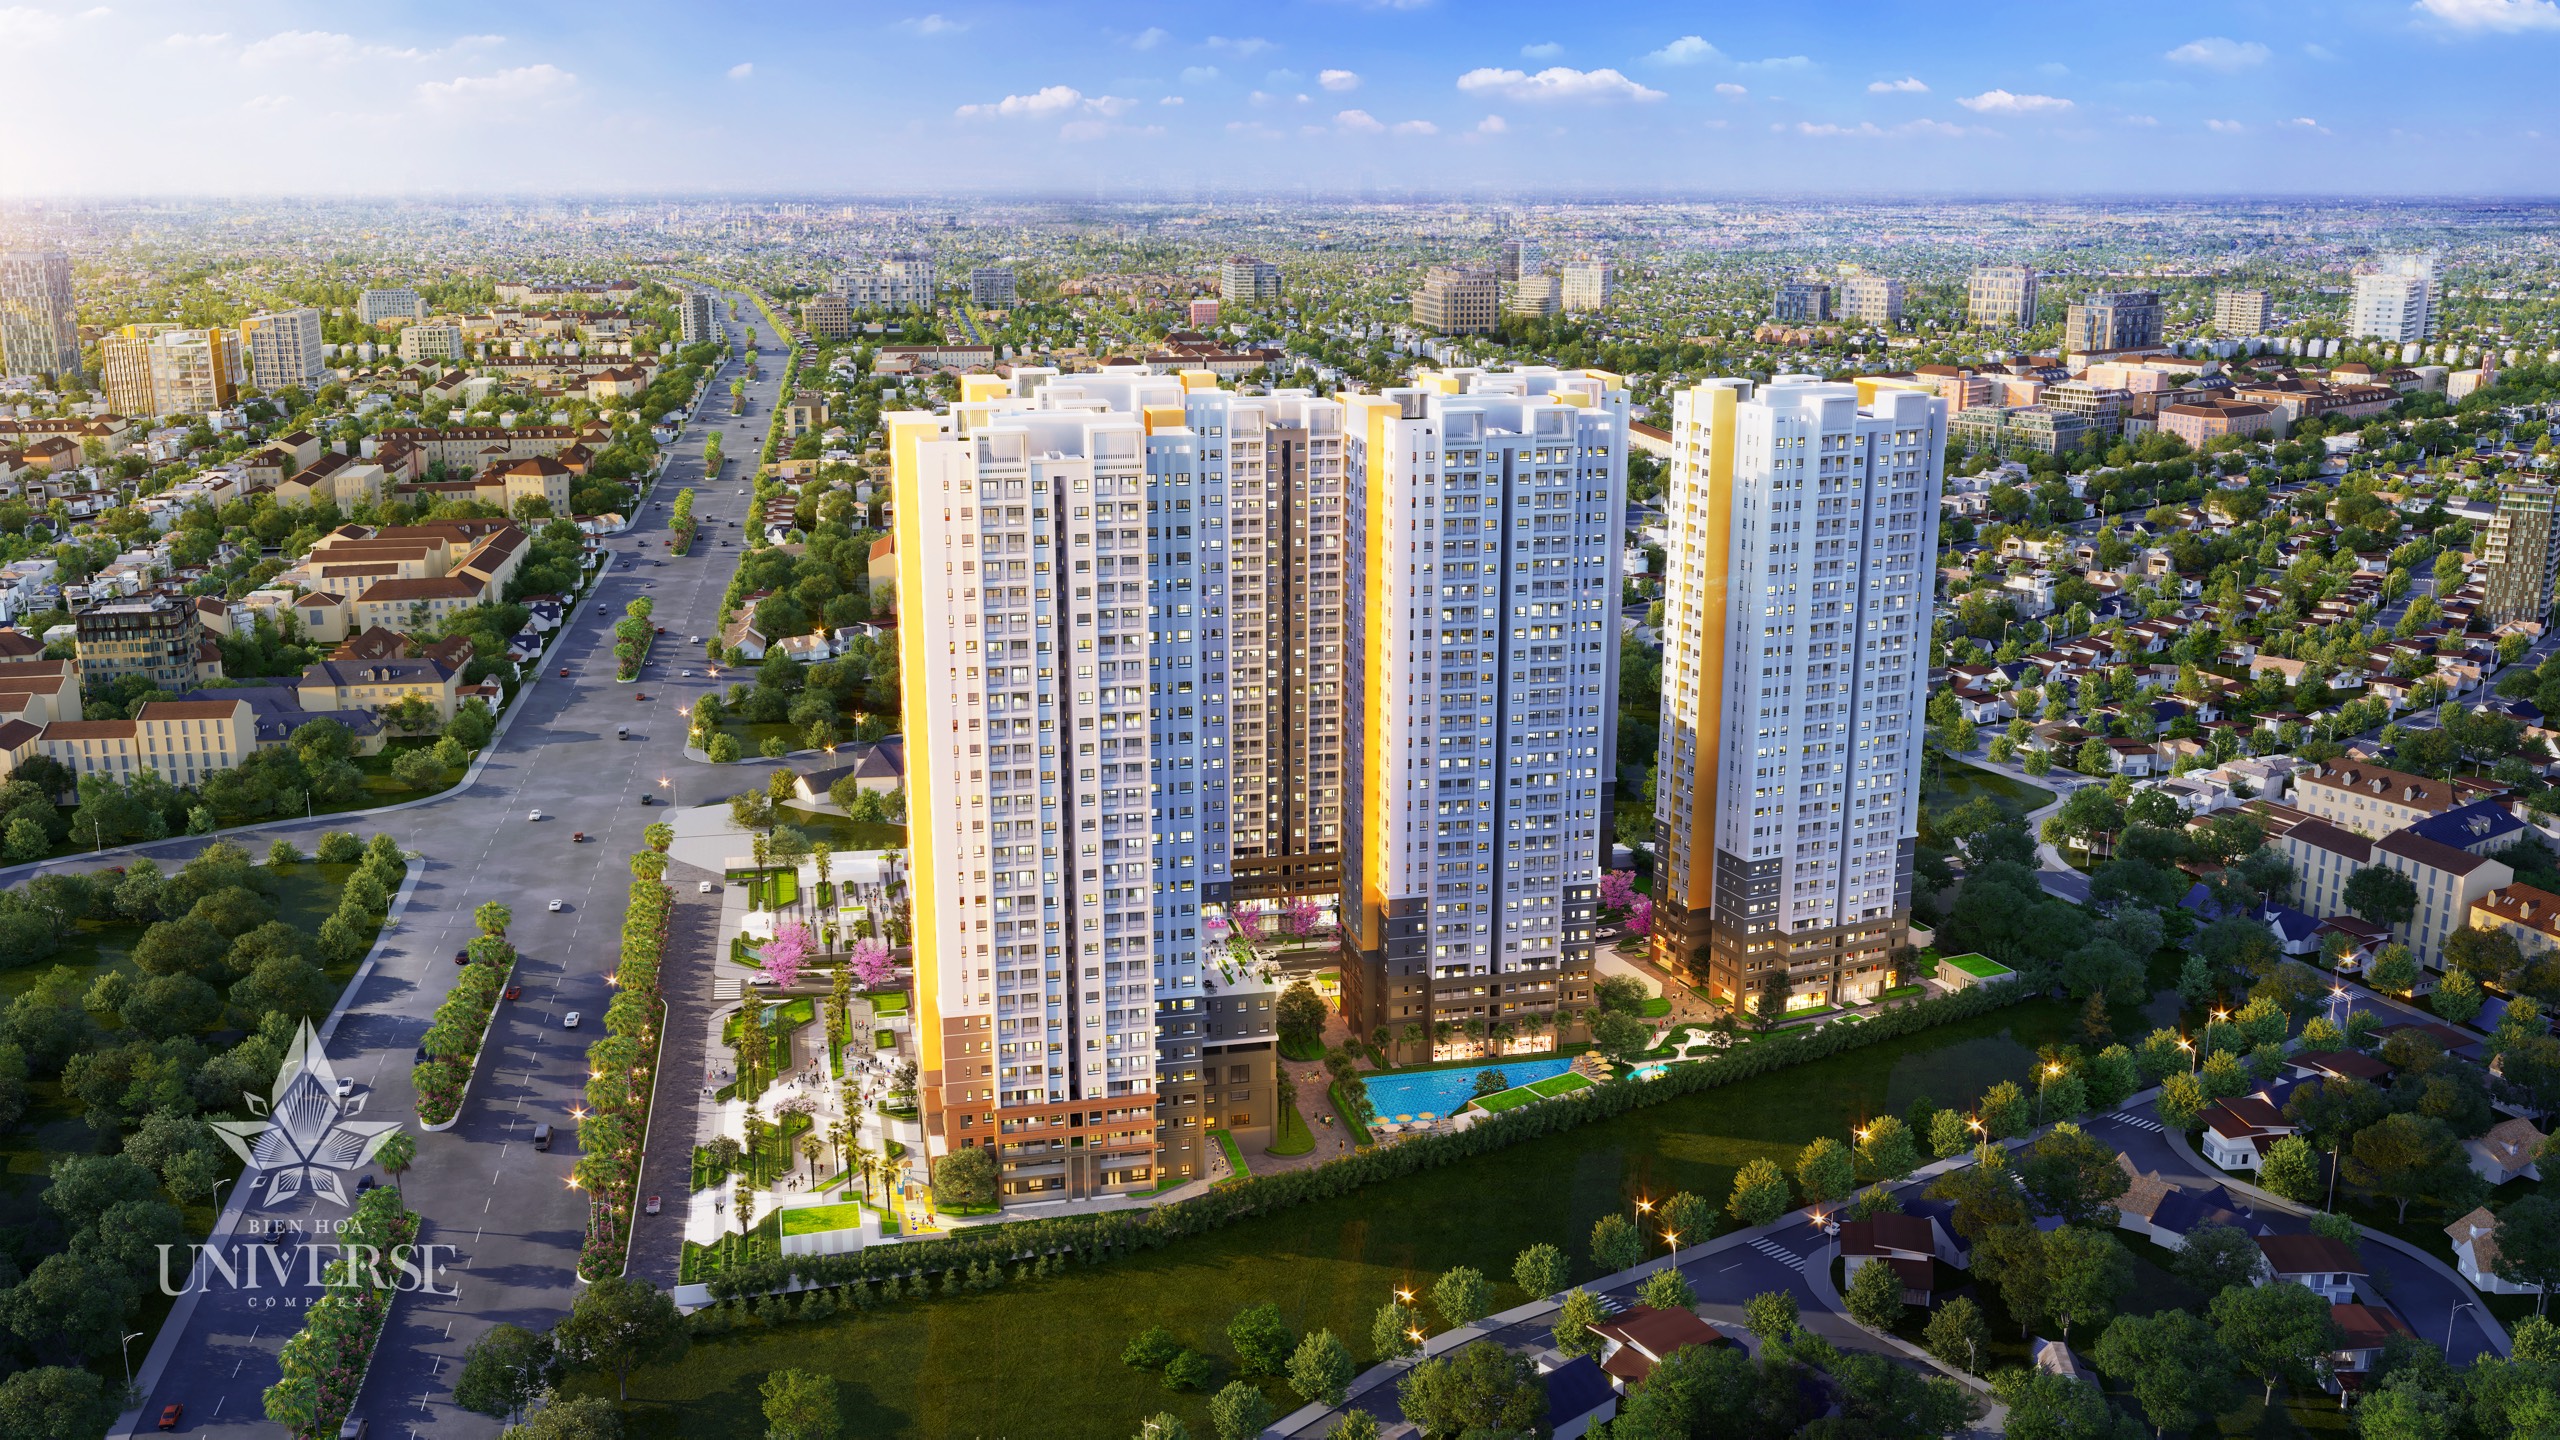 BIEN HOA UNIVERSE COMPLEX – Khu căn hộ cao cấp smart home trung tâm thành phố Biên Hòa.